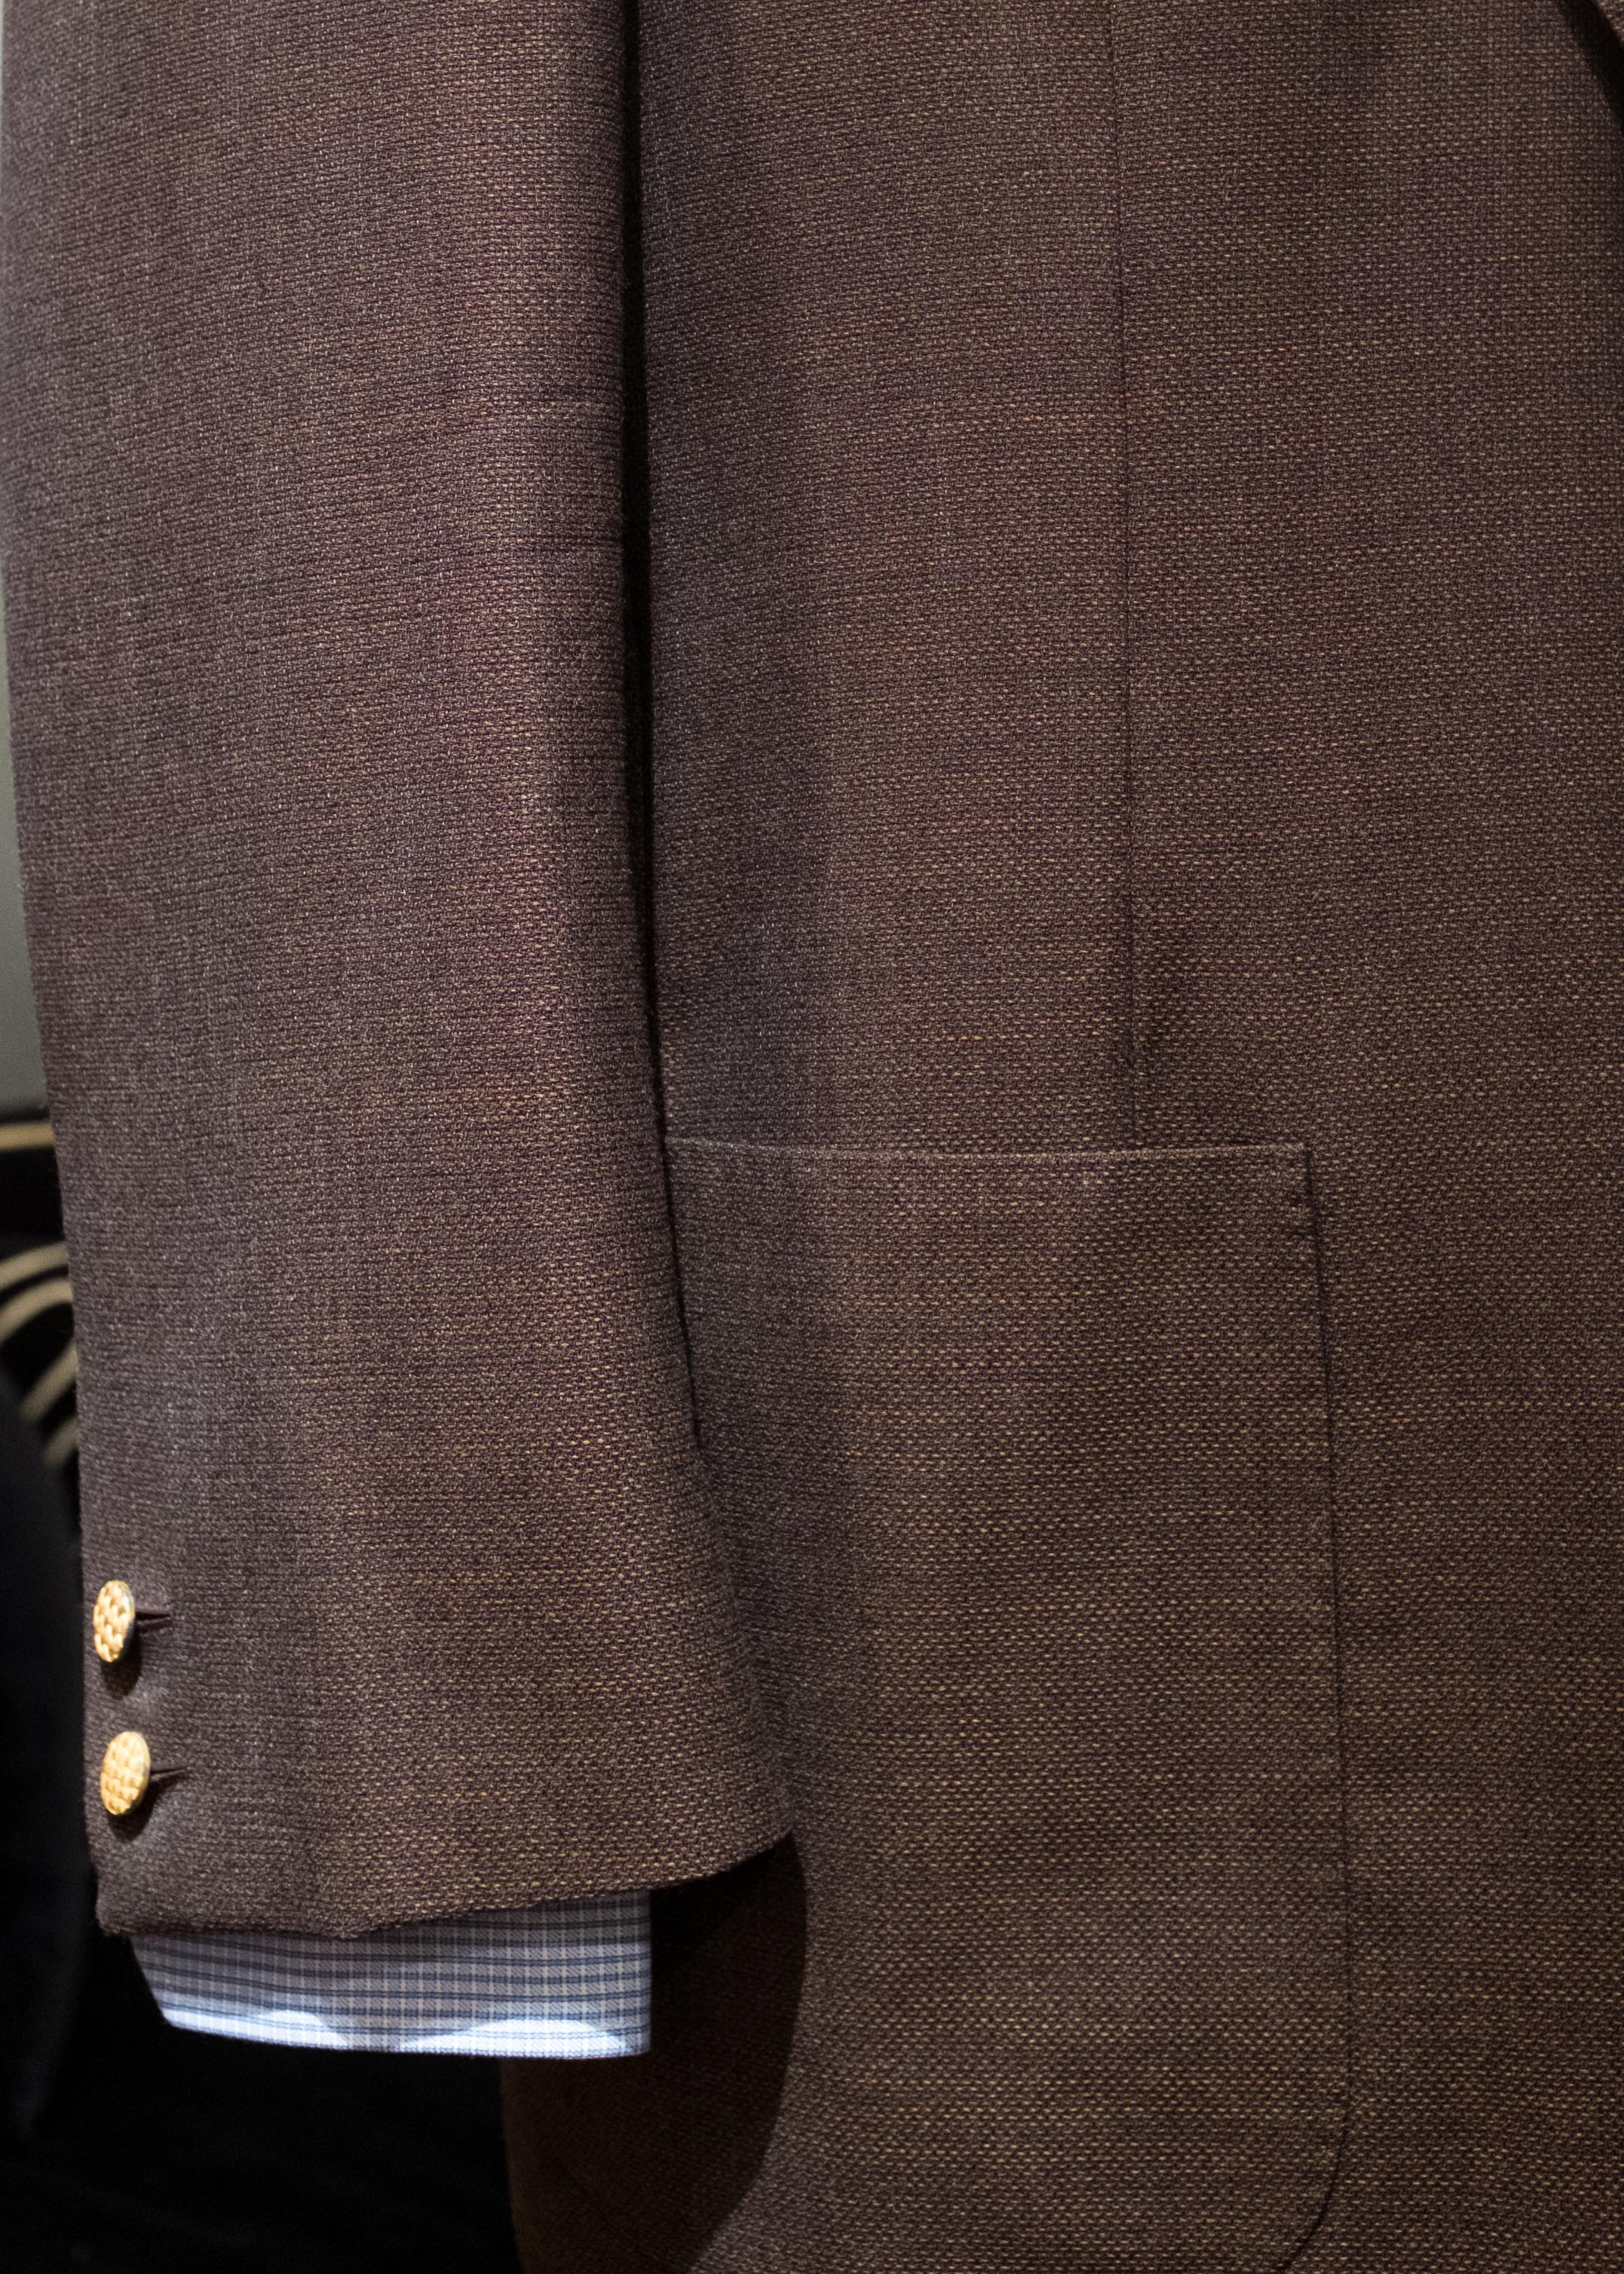 Jacket and Suit Pocket Options — Alan Flusser Custom